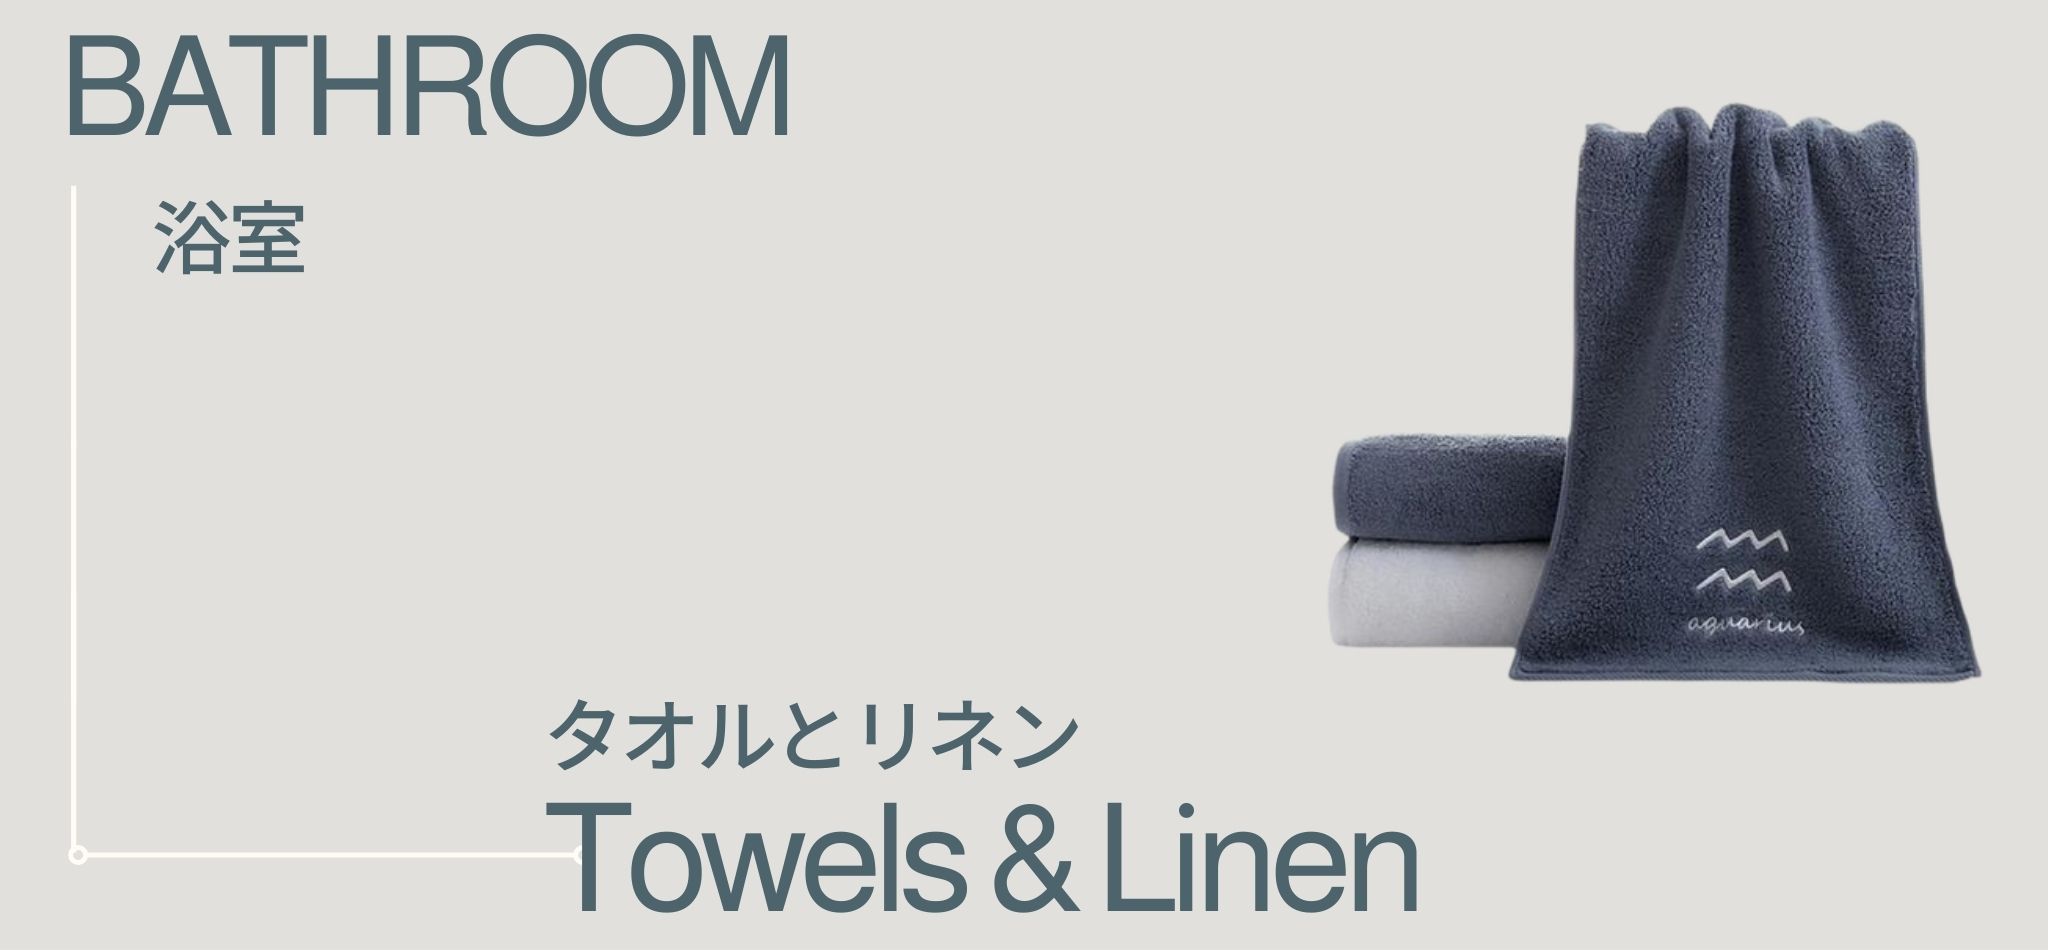 Bathroom Towels and Linen | miteigi 